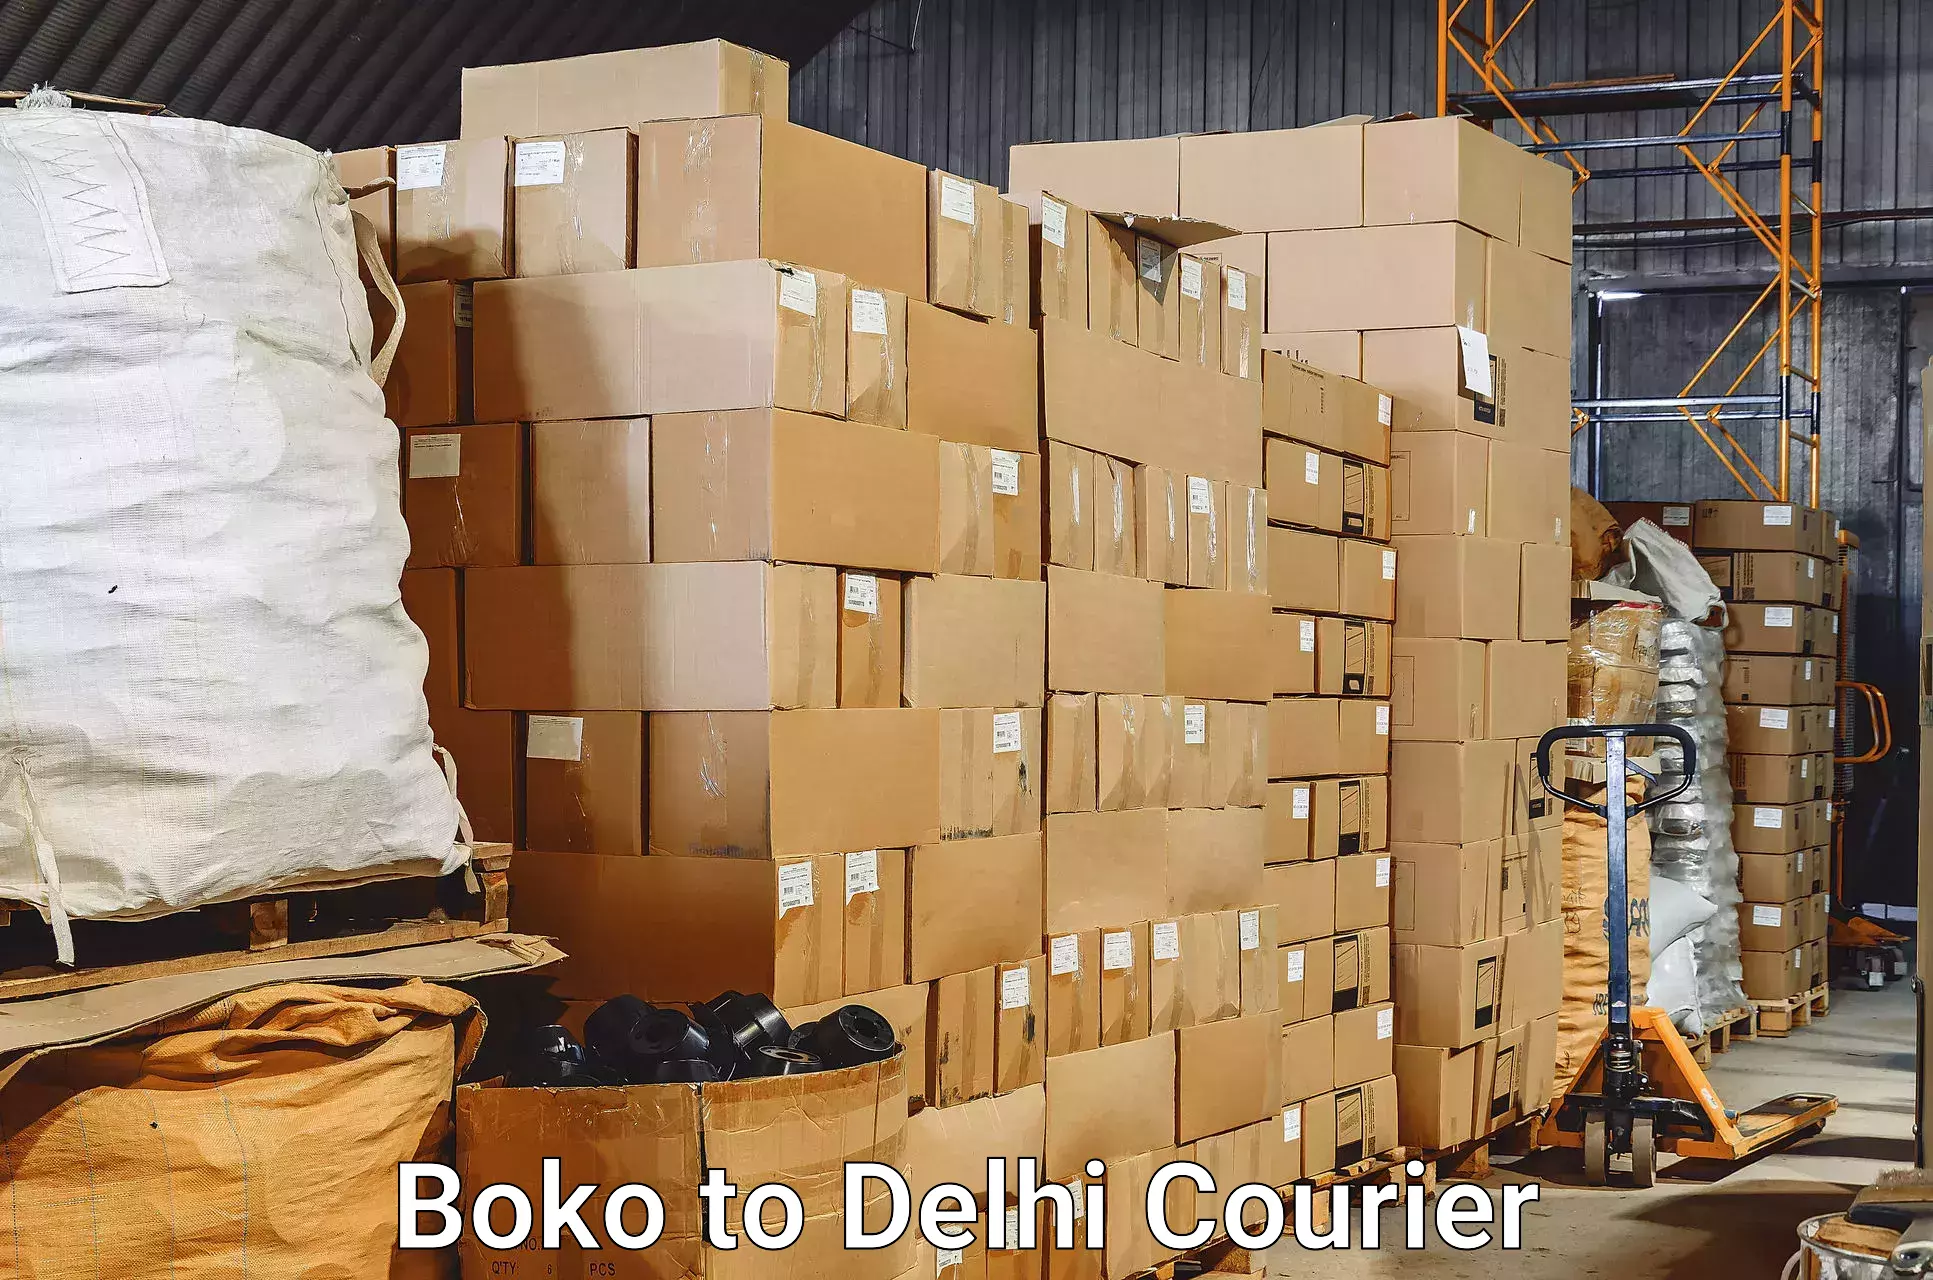 Luggage transfer service Boko to Delhi